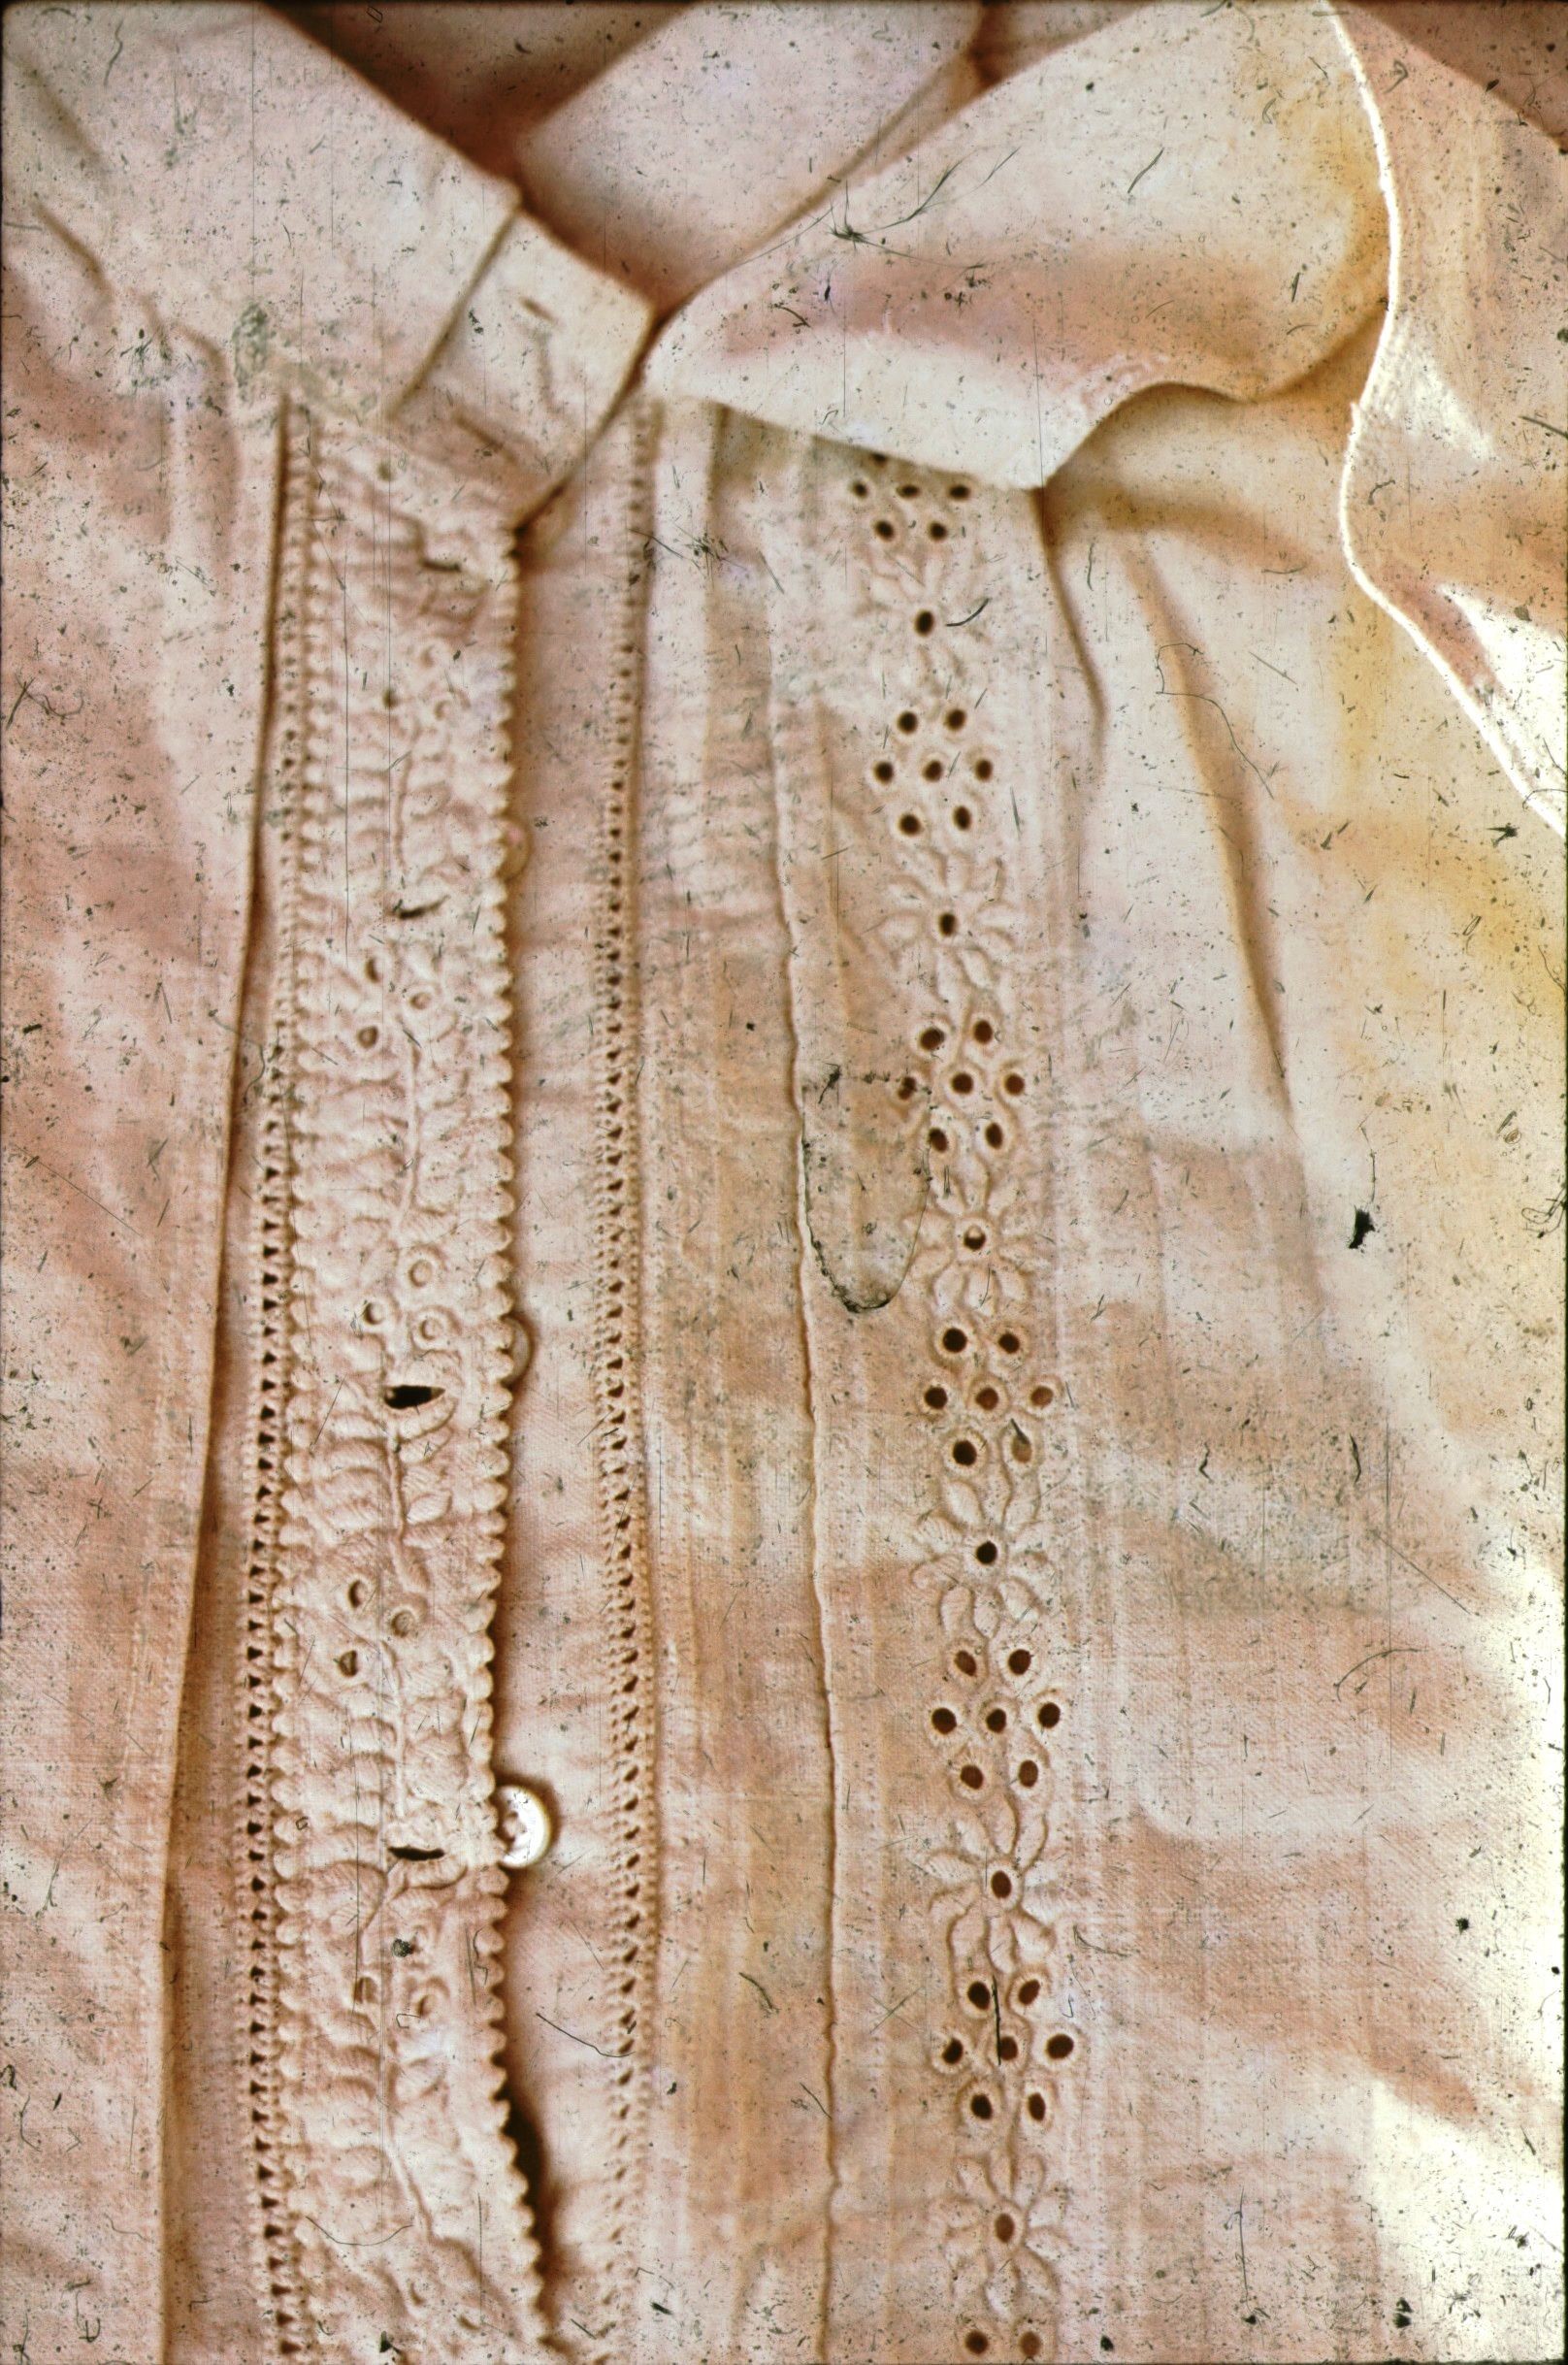 Törökkopányi fehérhímzéses férfi ing (Rippl-Rónai Múzeum CC BY-NC-ND)